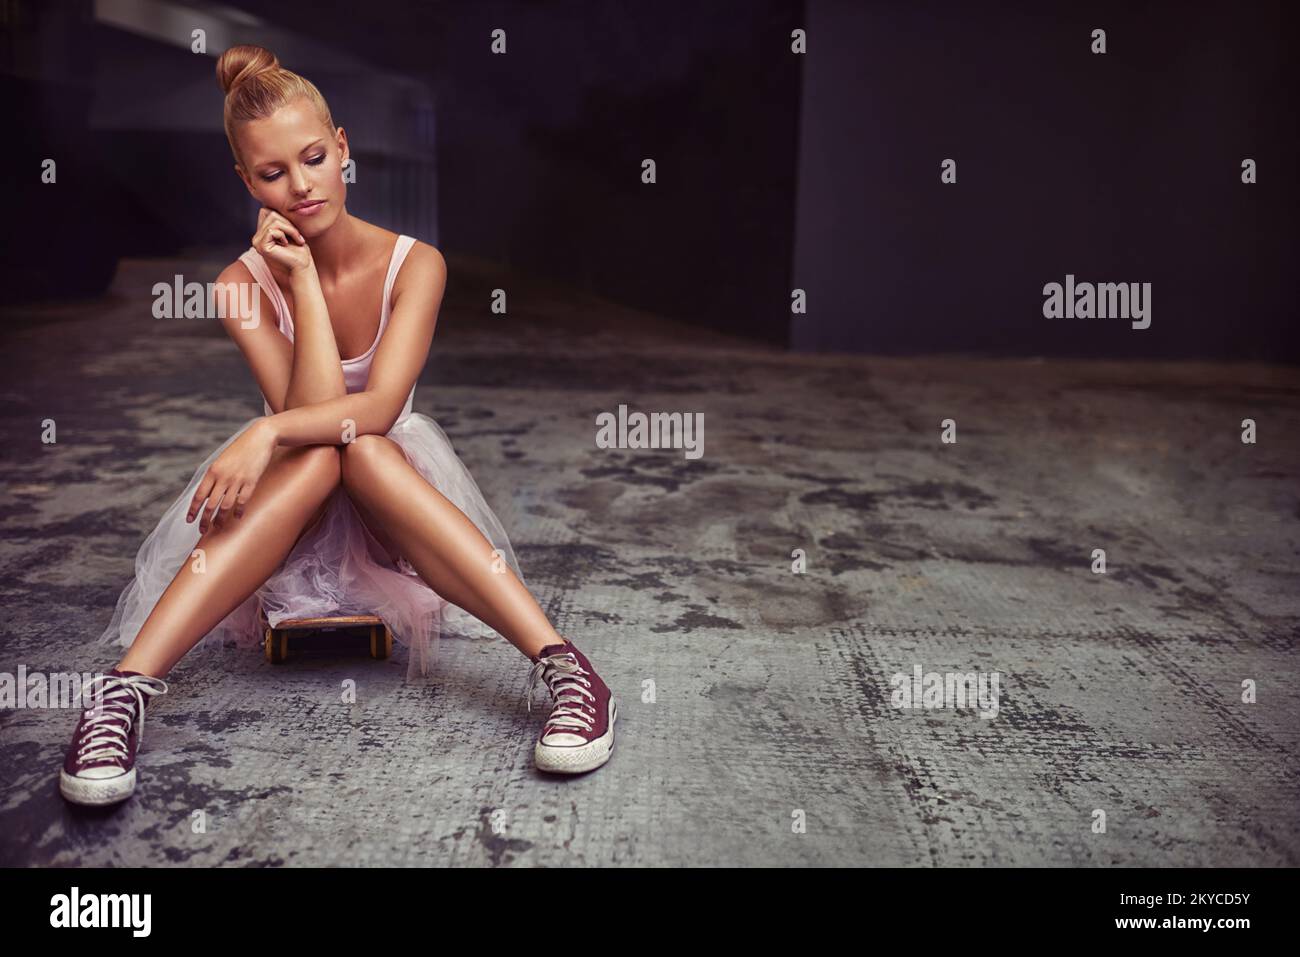 Ha molti lati alla sua personalità. Una giovane donna che indossa un balletto tutu e sneakers seduti su un pavimento di cemento. Foto Stock